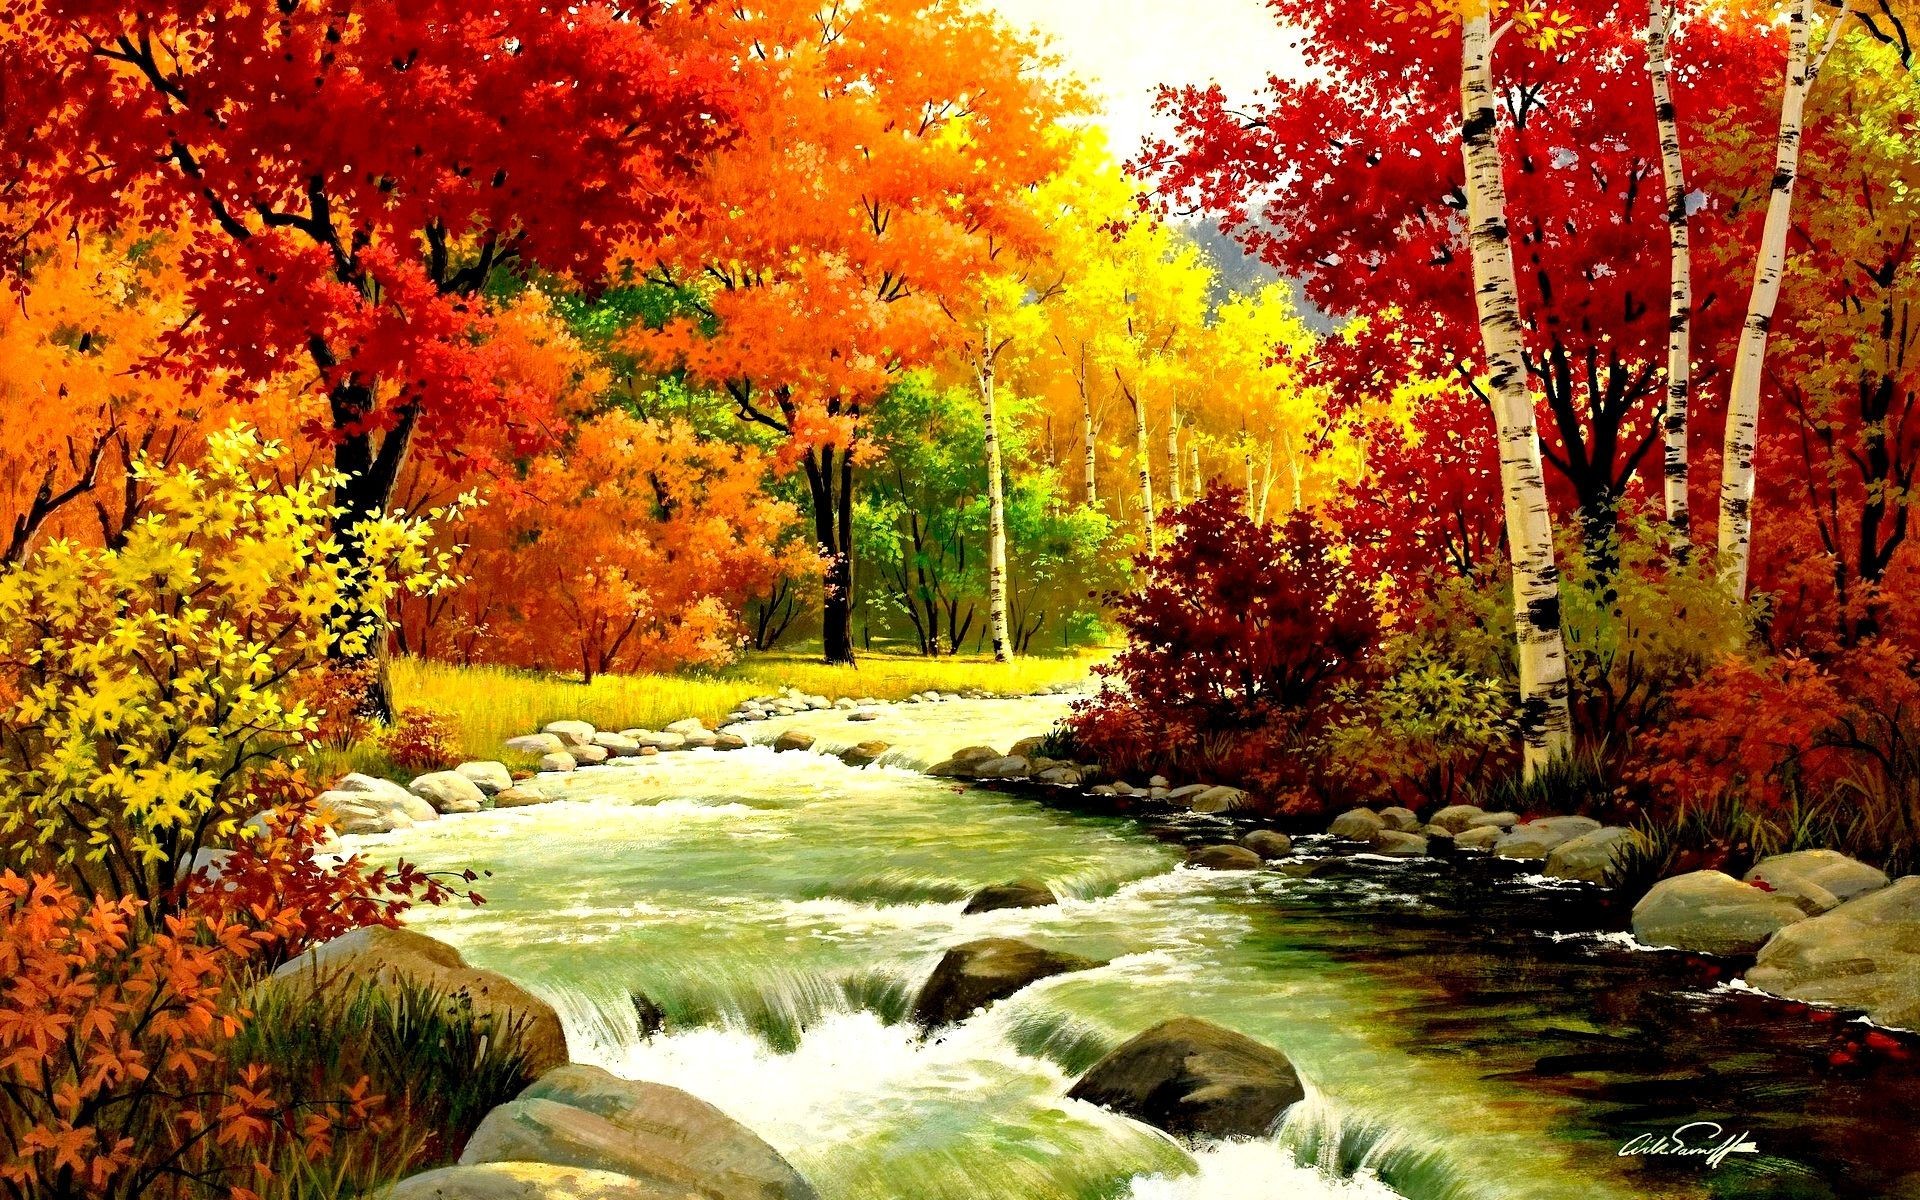 1920x1200 Autumn Landscape Wallpaper Hd New Beautiful Autumn Landscape Fall Foliage  Colors Pinterest Scheme Of Autumn Landscape